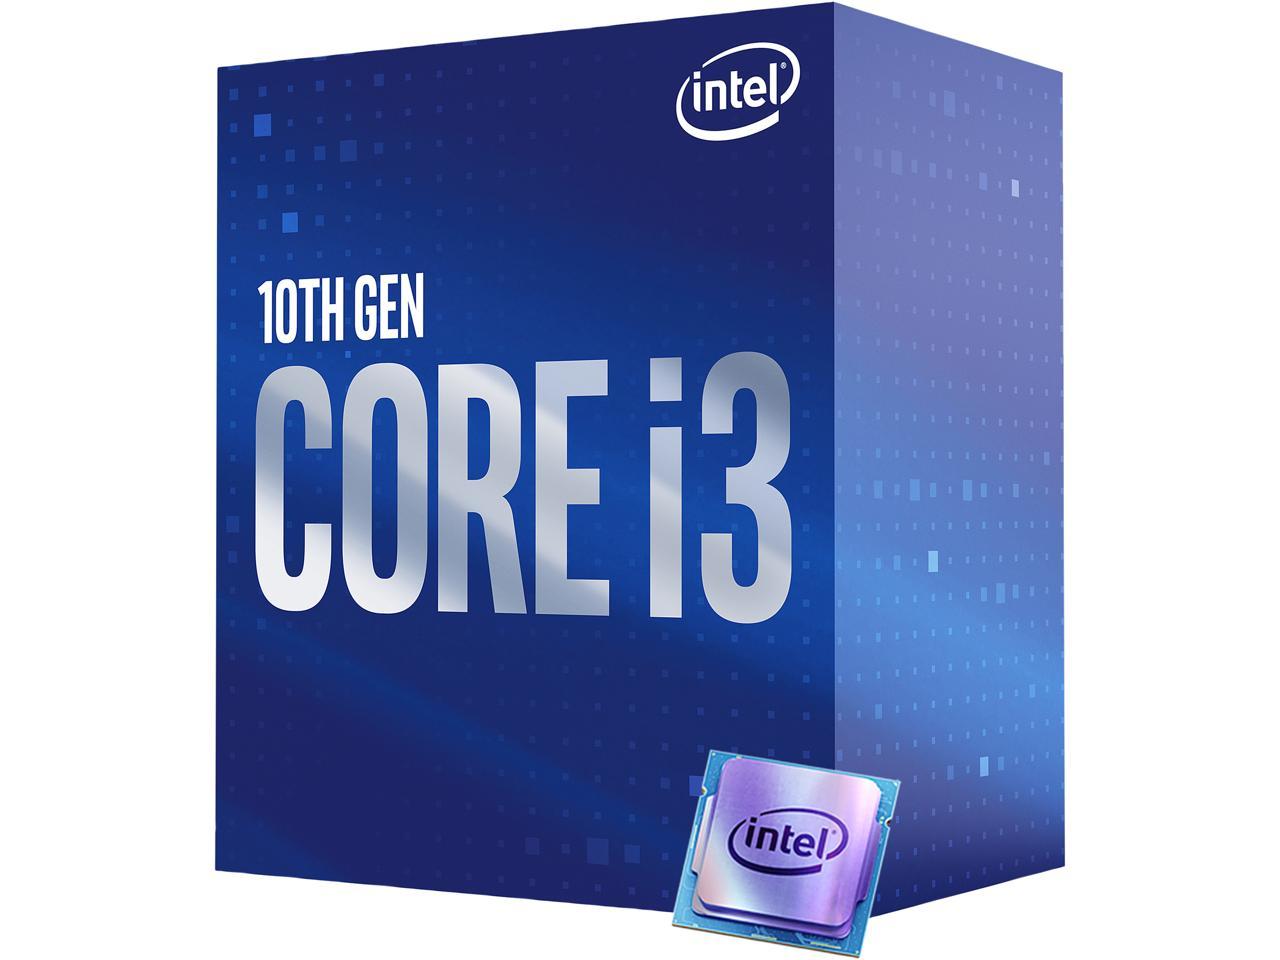 afvoer Nodig uit De slaapkamer schoonmaken Intel Core i3-10100 3.6 GHz LGA 1200 Desktop Processor - Newegg.com